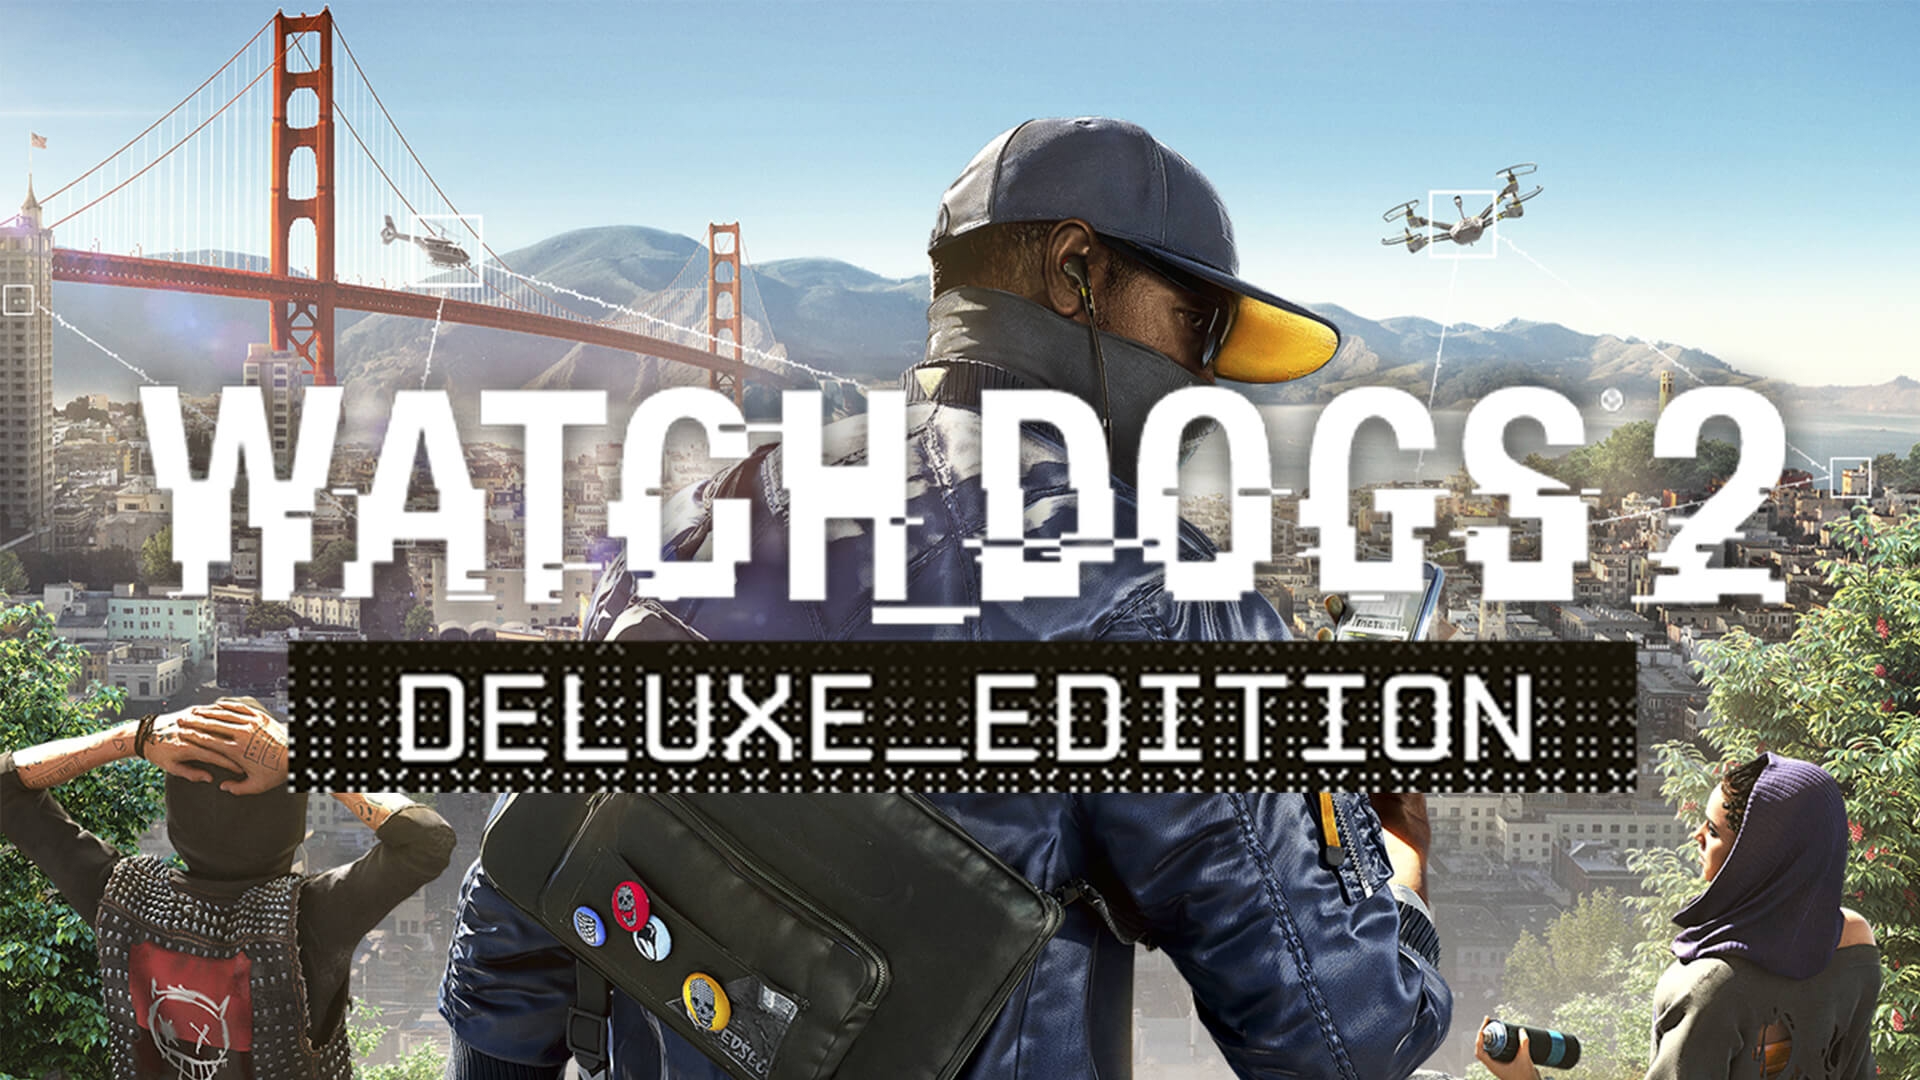 watch dogs 2 release date